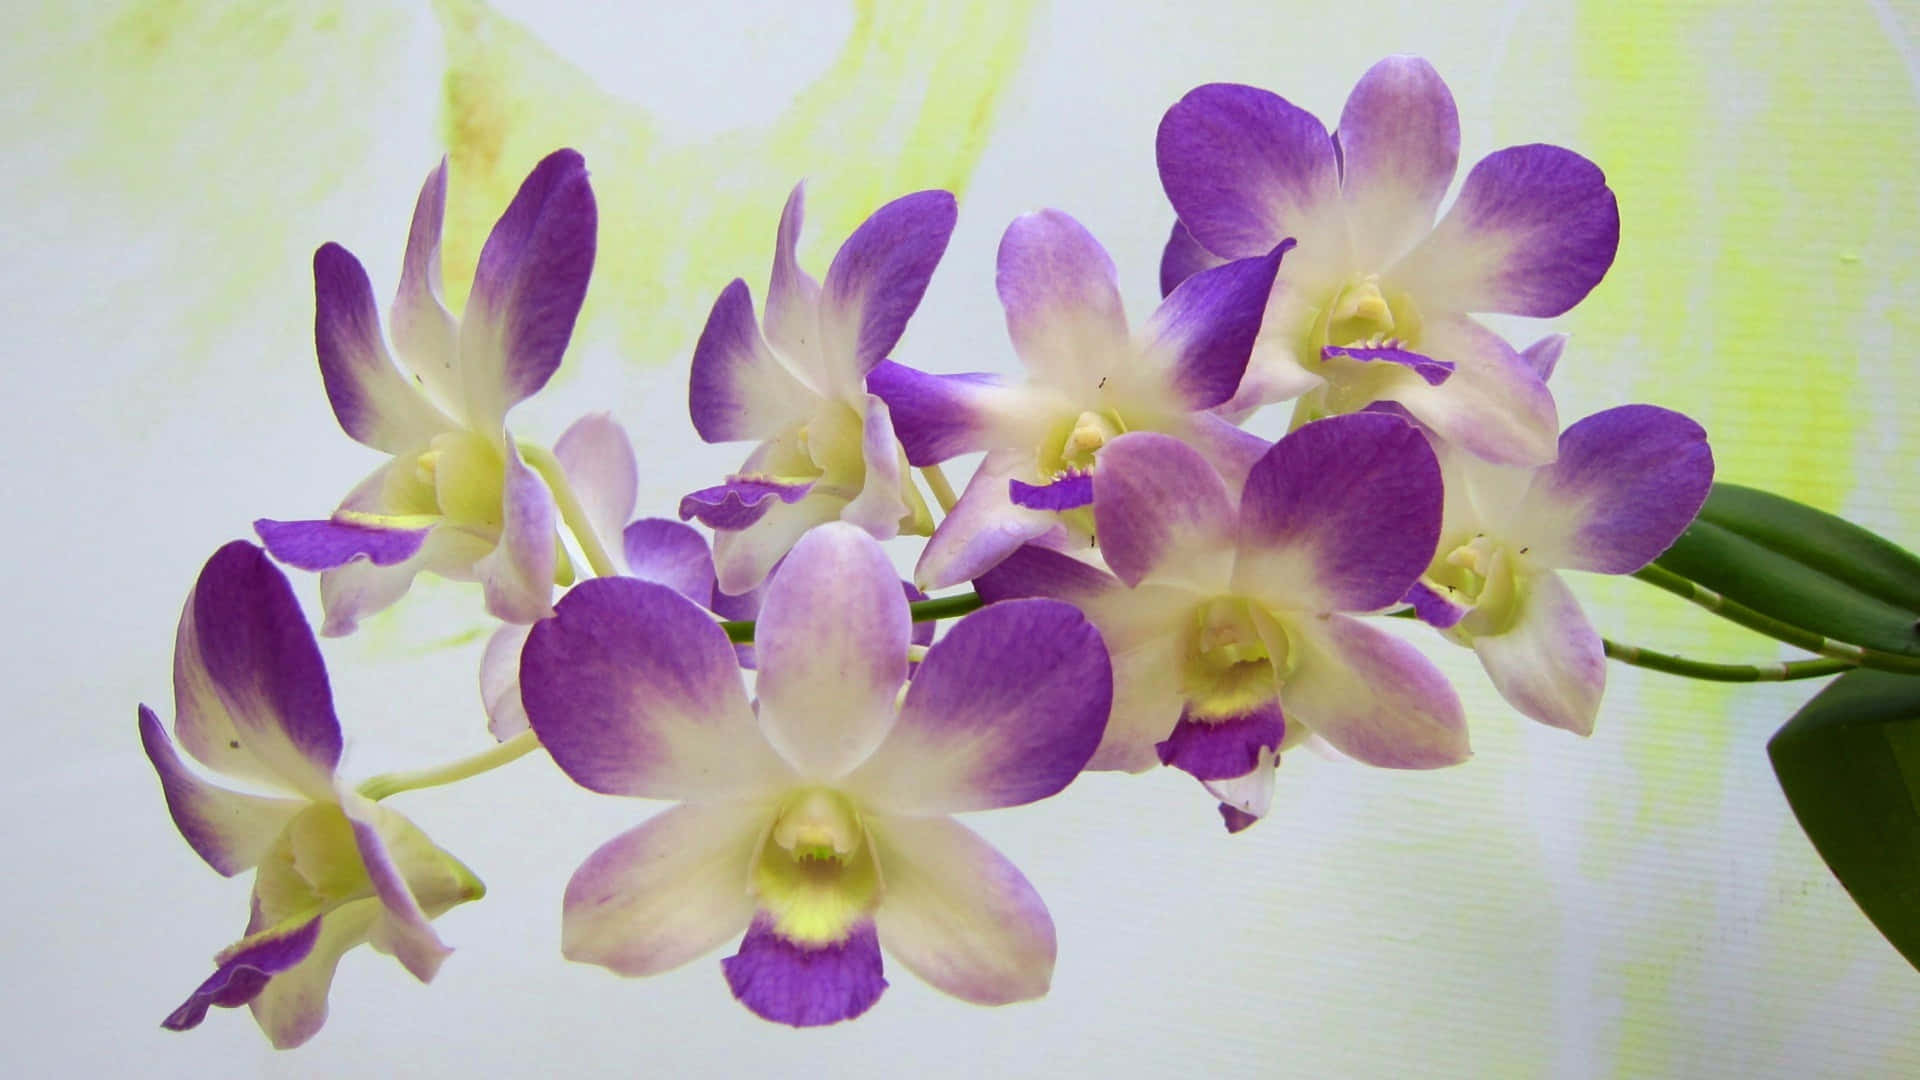 Orchideeviola In Un Vaso Con Uno Sfondo Bianco